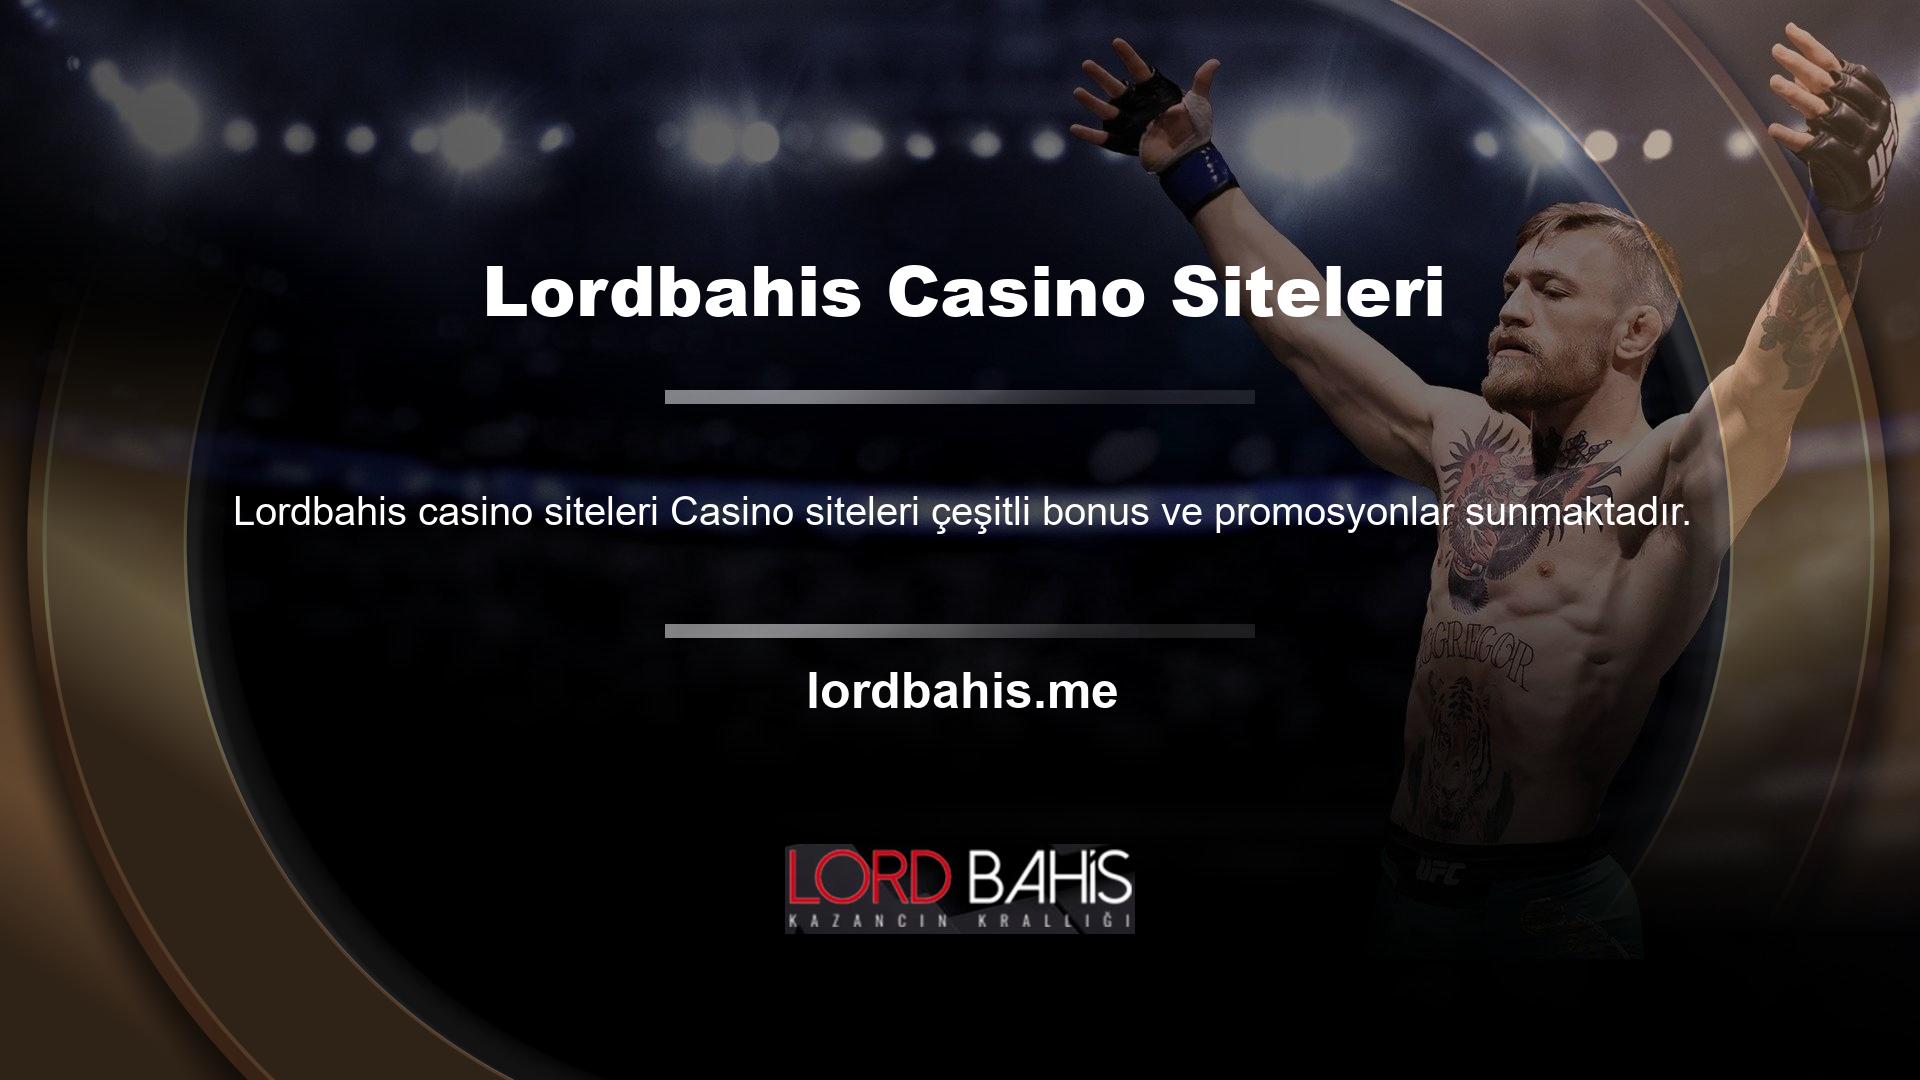 Özellikle casino sitelerinde kullanıcıların daha fazla para kazanmasını sağlayan aktiviteler bulunmaktadır